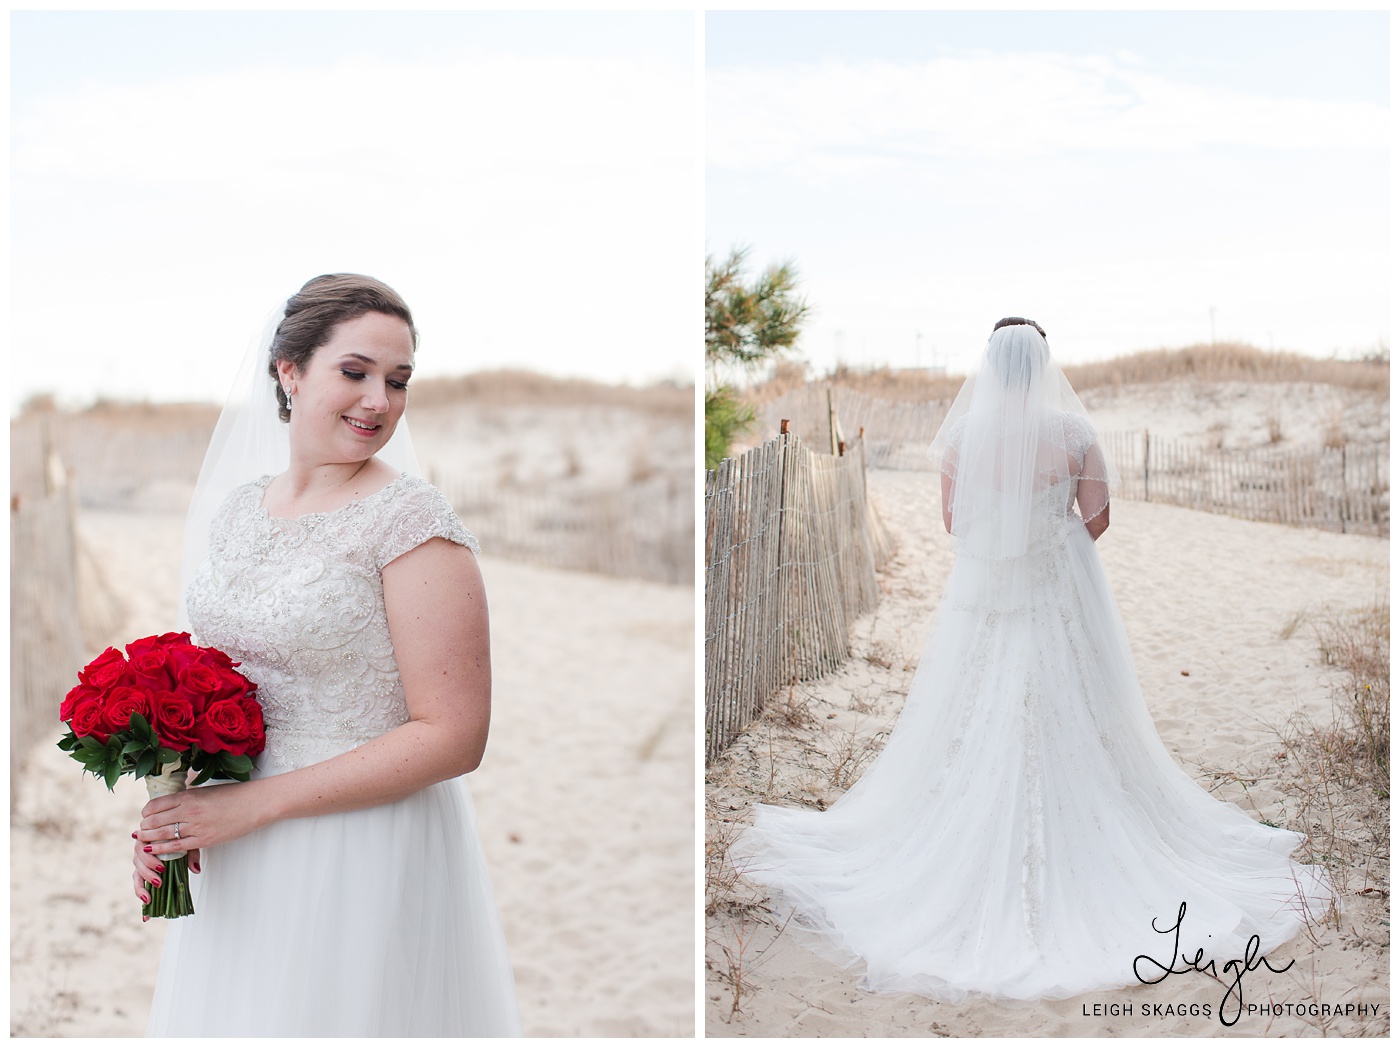 Ashley & Dan | A Shifting Sands Wedding